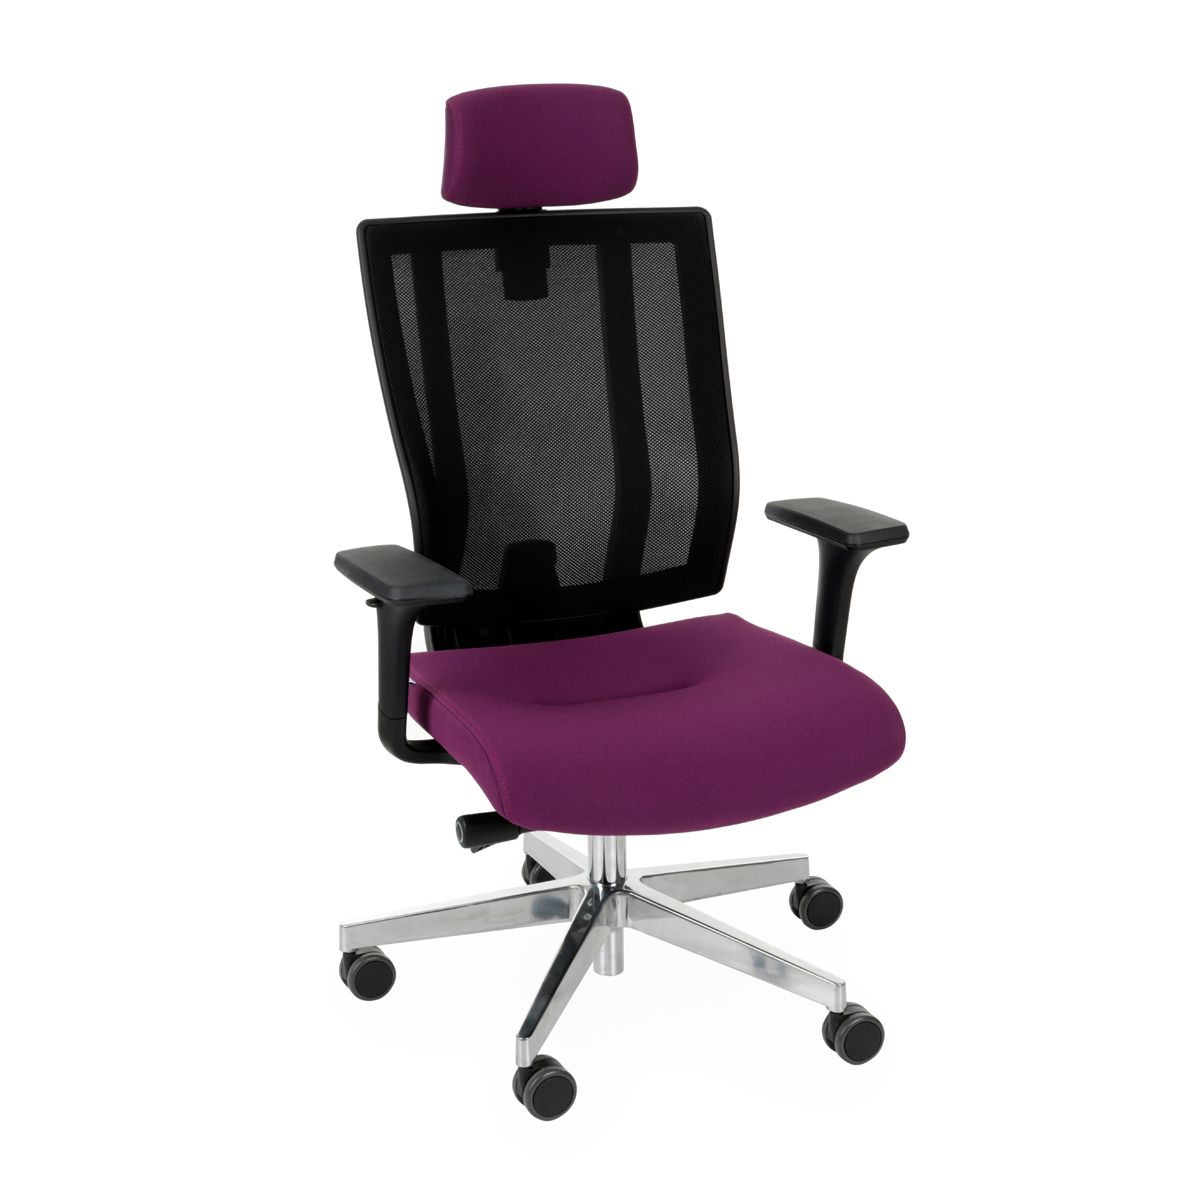 Kancelárska stolička s podrúčkami Mixerot BS HD - fialová / čierna / chróm - nabbi.sk